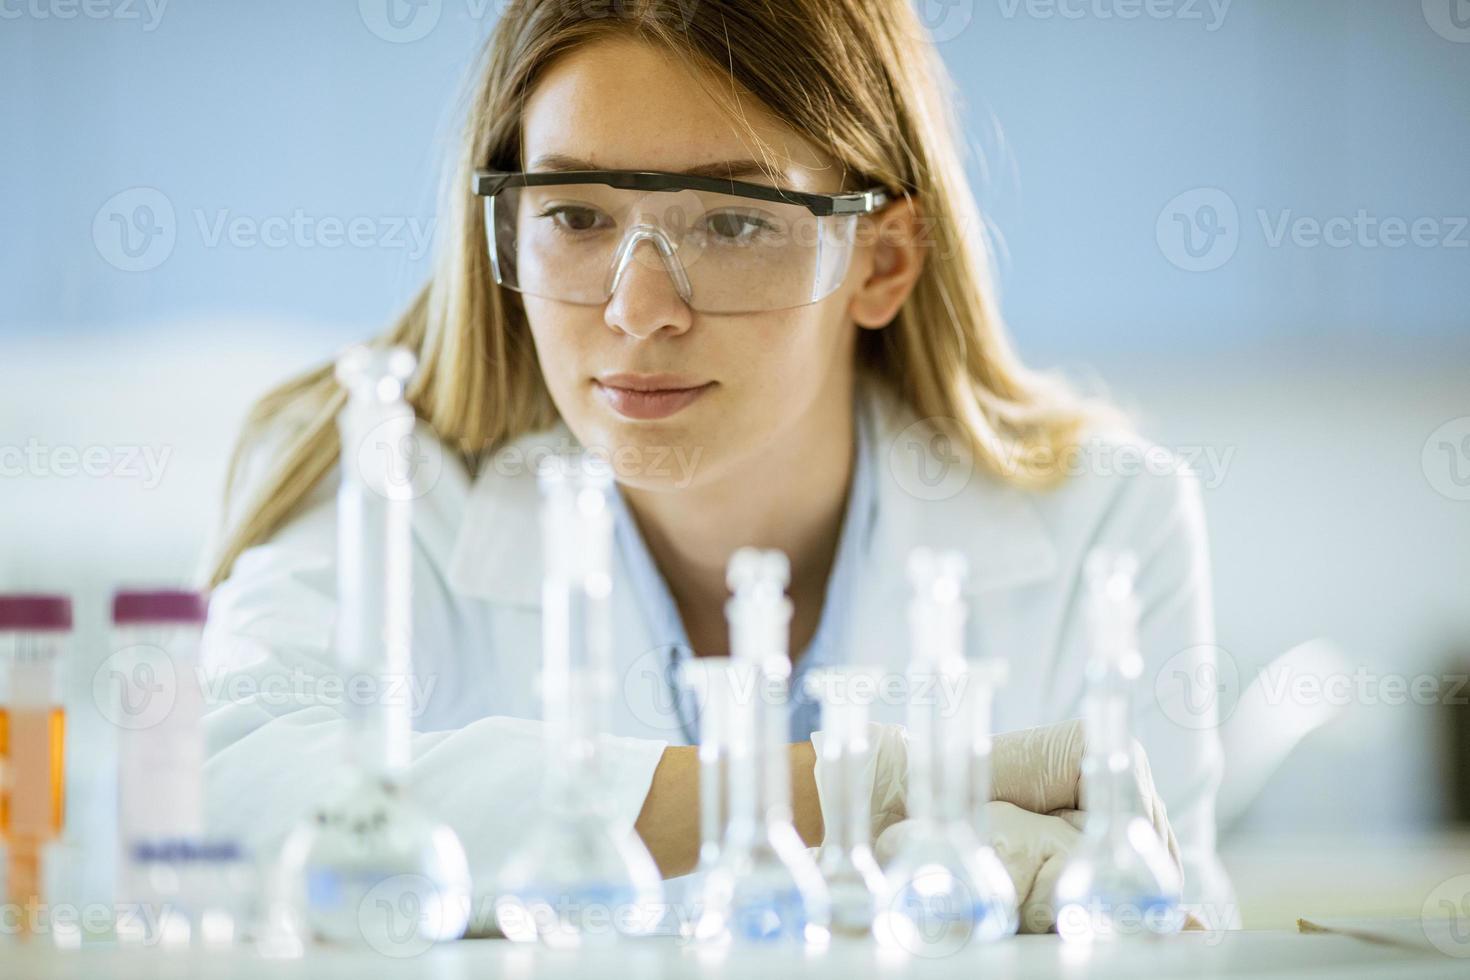 Investigadora científica o médica femenina mirando frascos con soluciones en un laboratorio foto